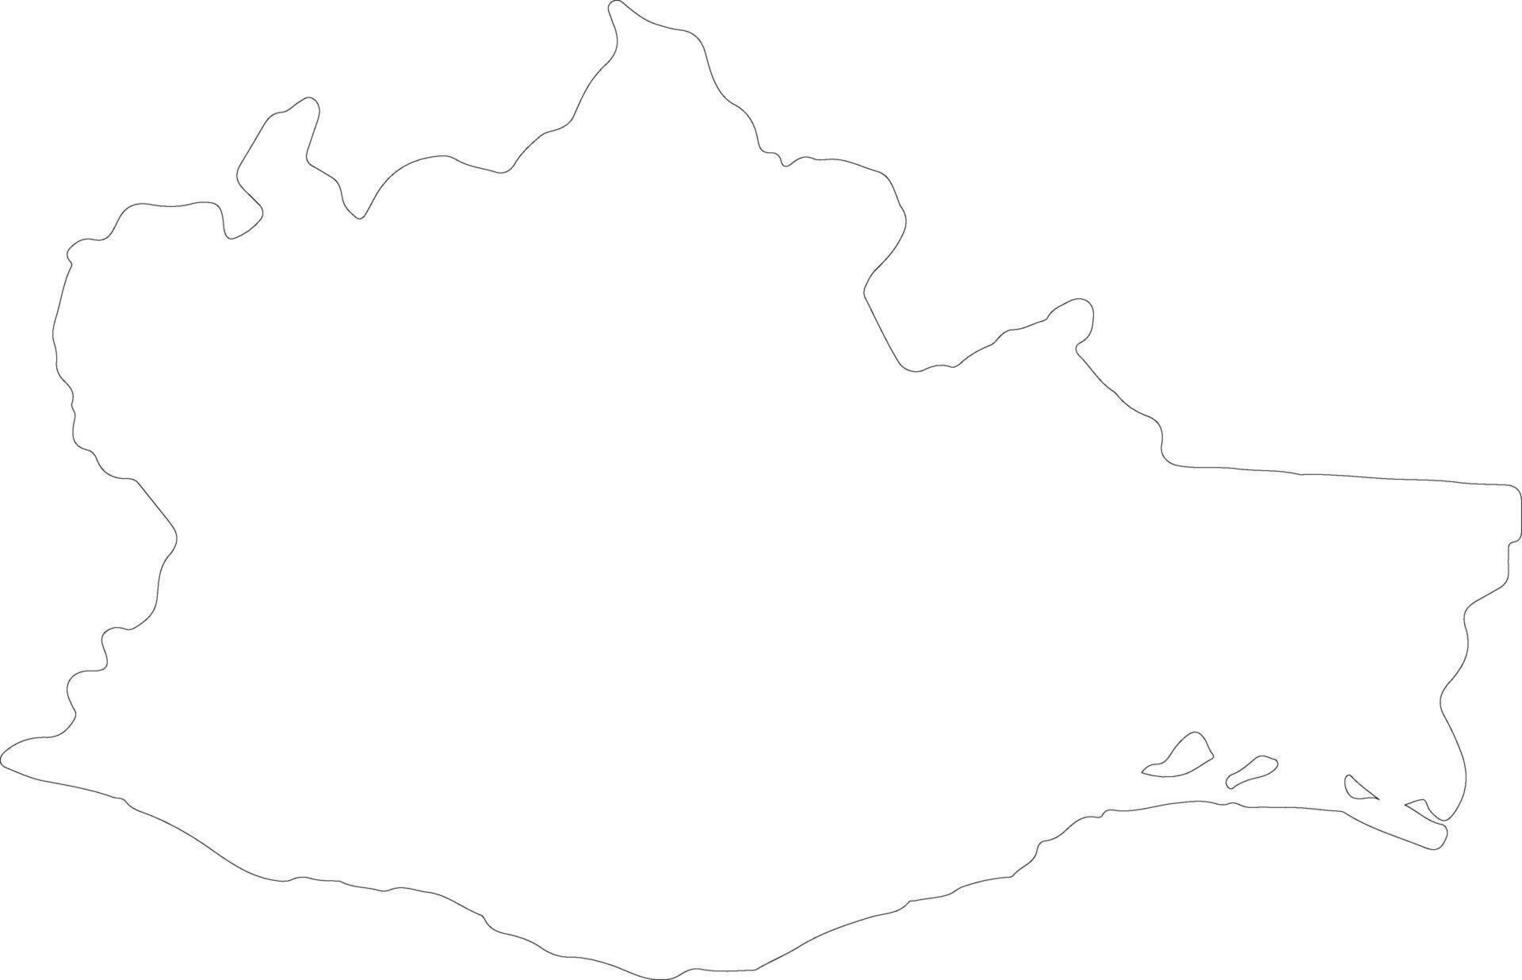 Oaxaca Mexico outline map vector